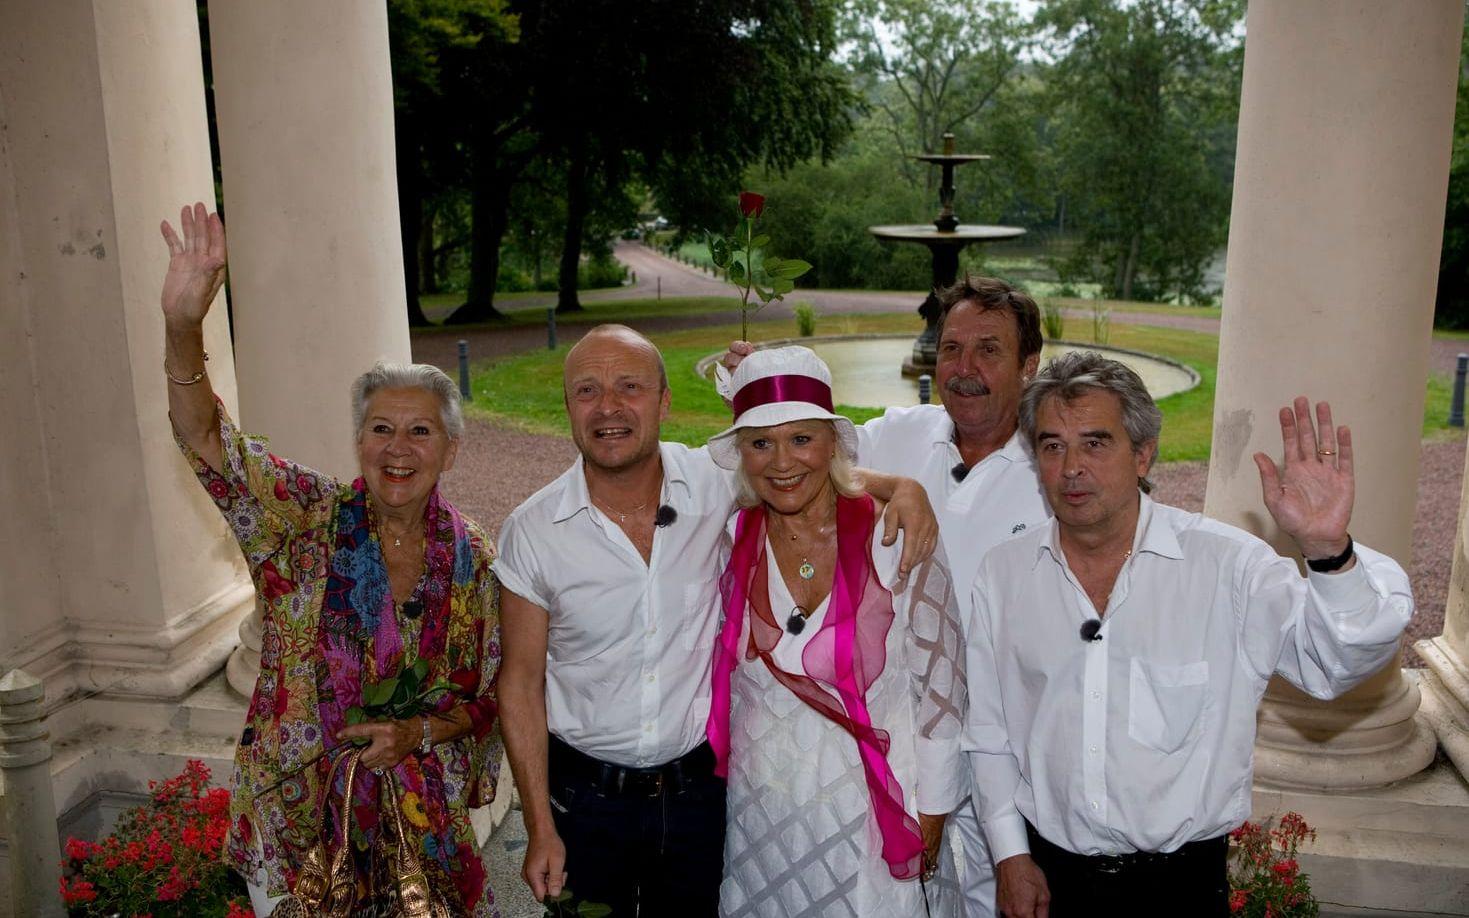  "Stjärnorna på slottet" 2008: Kjerstin Dellert, Jonas Gardell, Christina Schollin, Jan "Loffe" Carlsson och Staffan Scheja  var det årets stjärnor. 